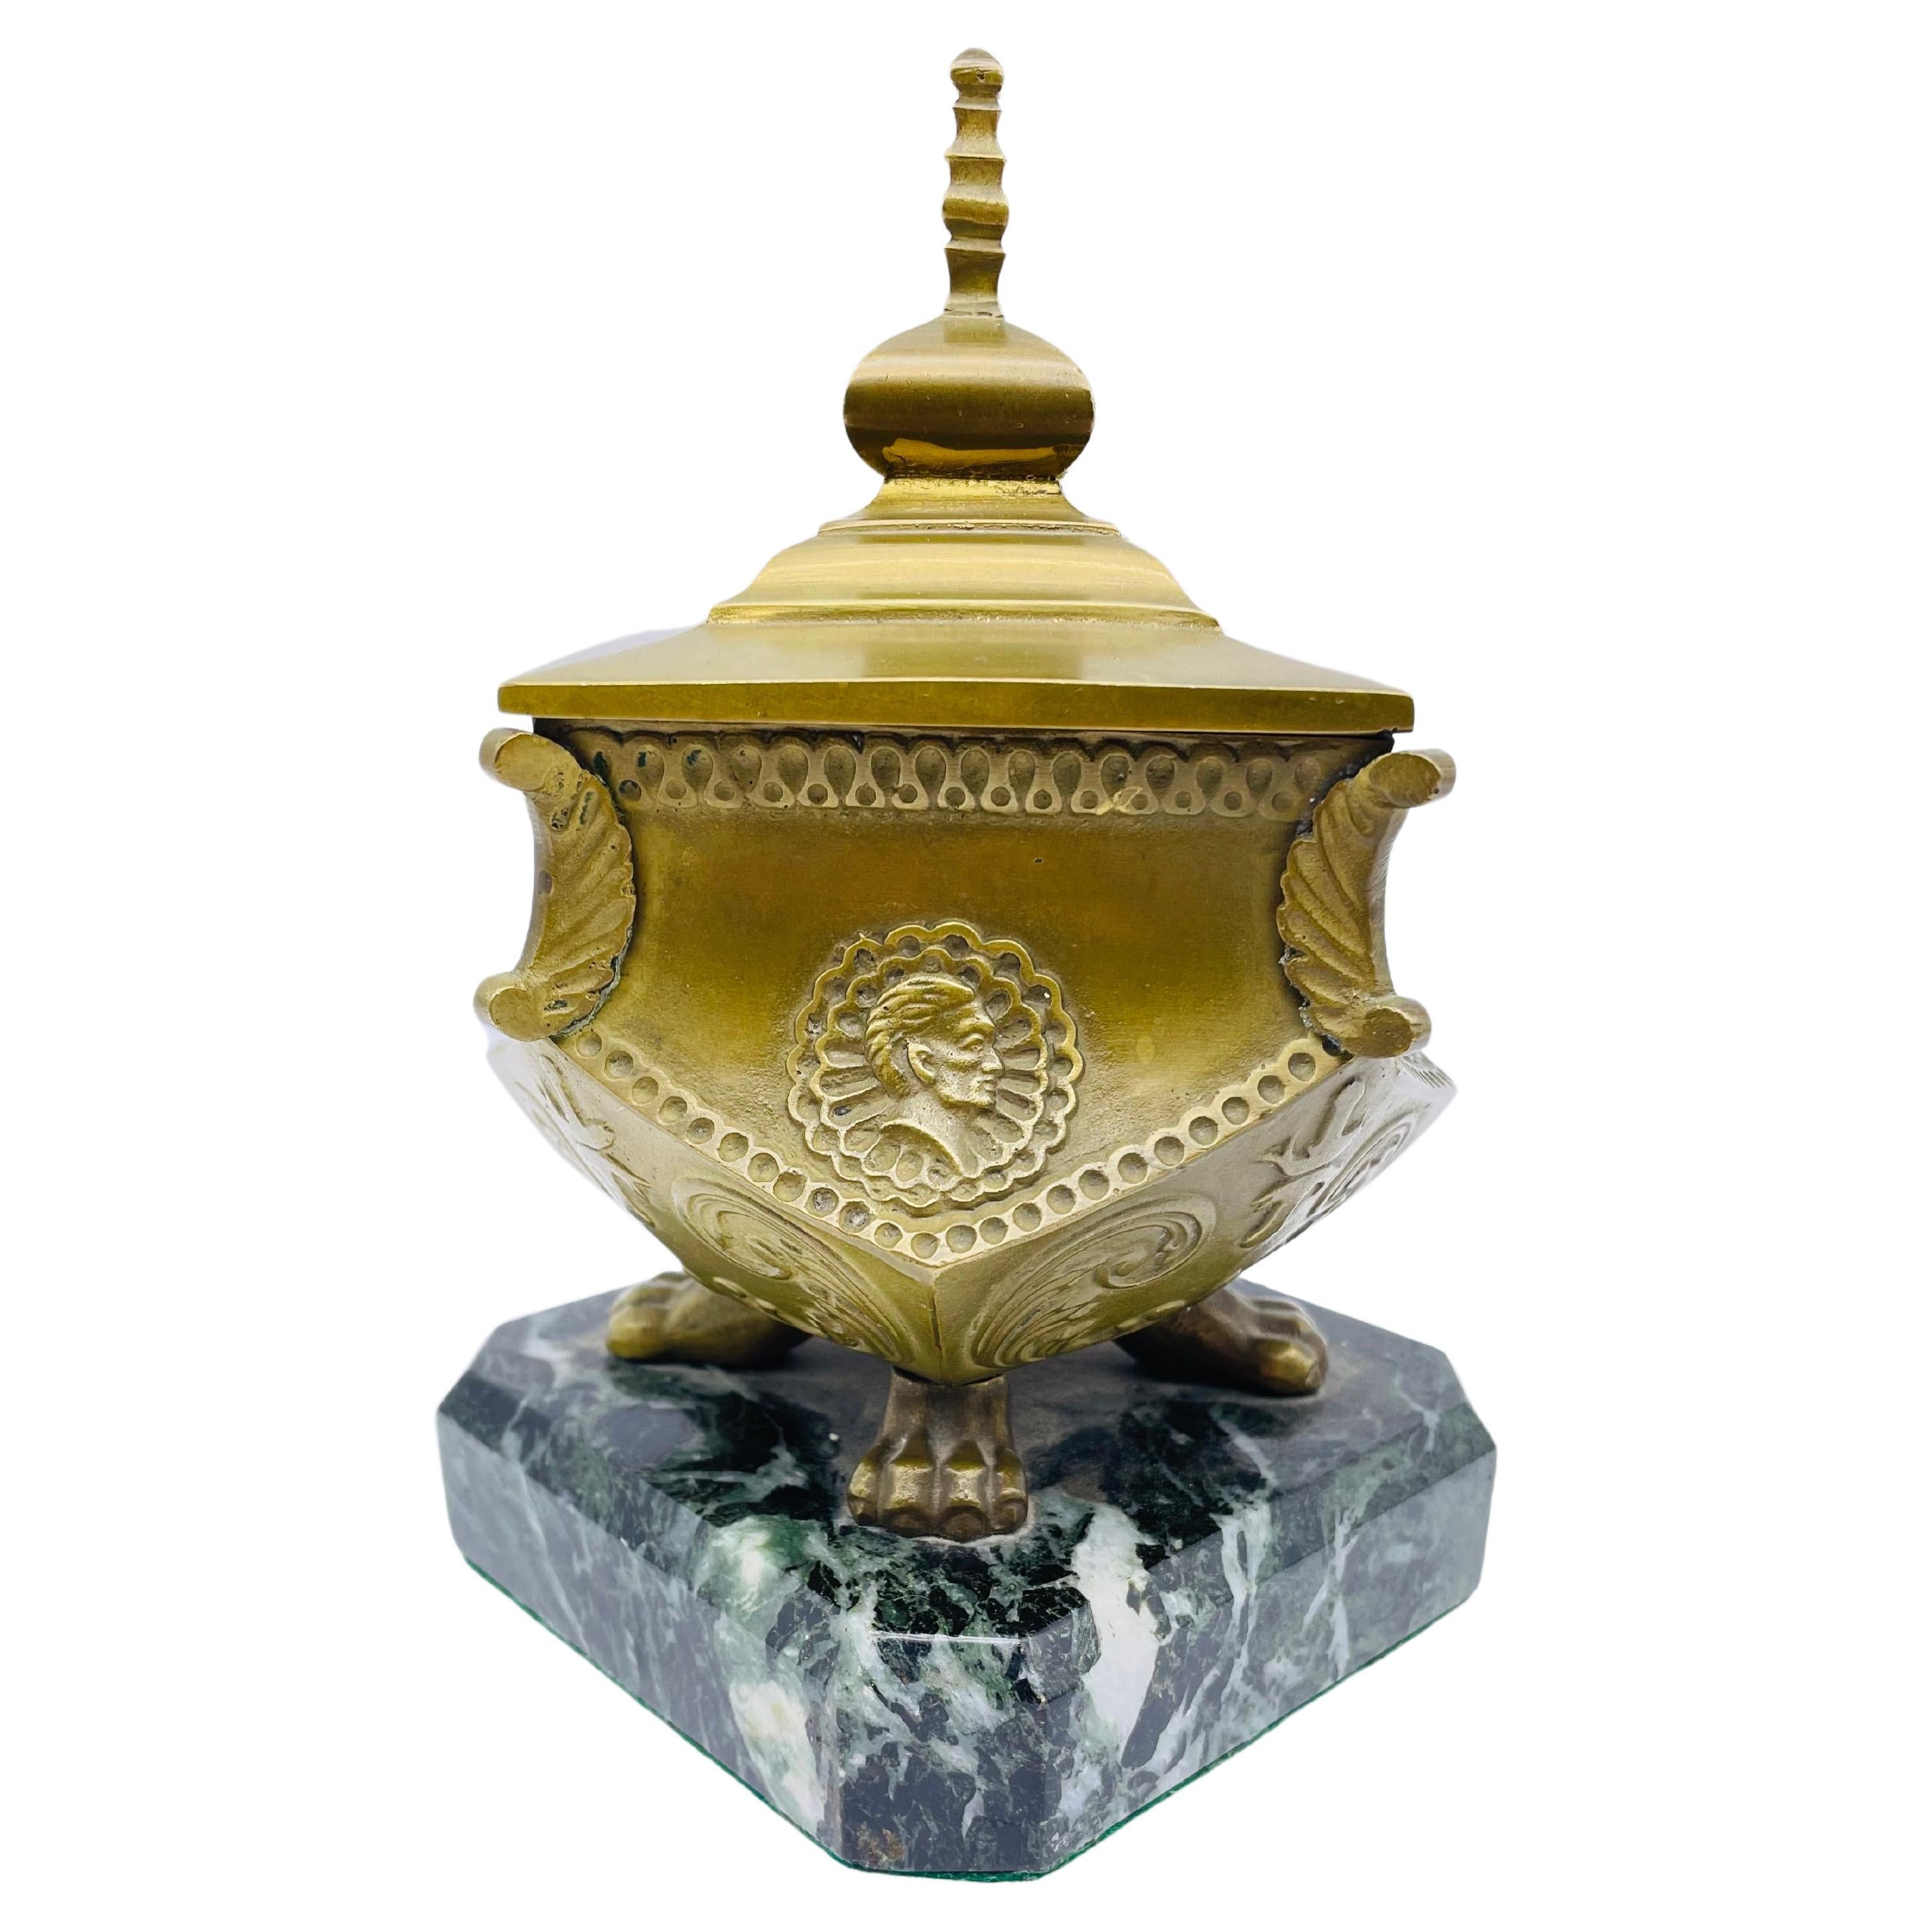 Stately Antique Brass Bronze Inkwell, Around 1880